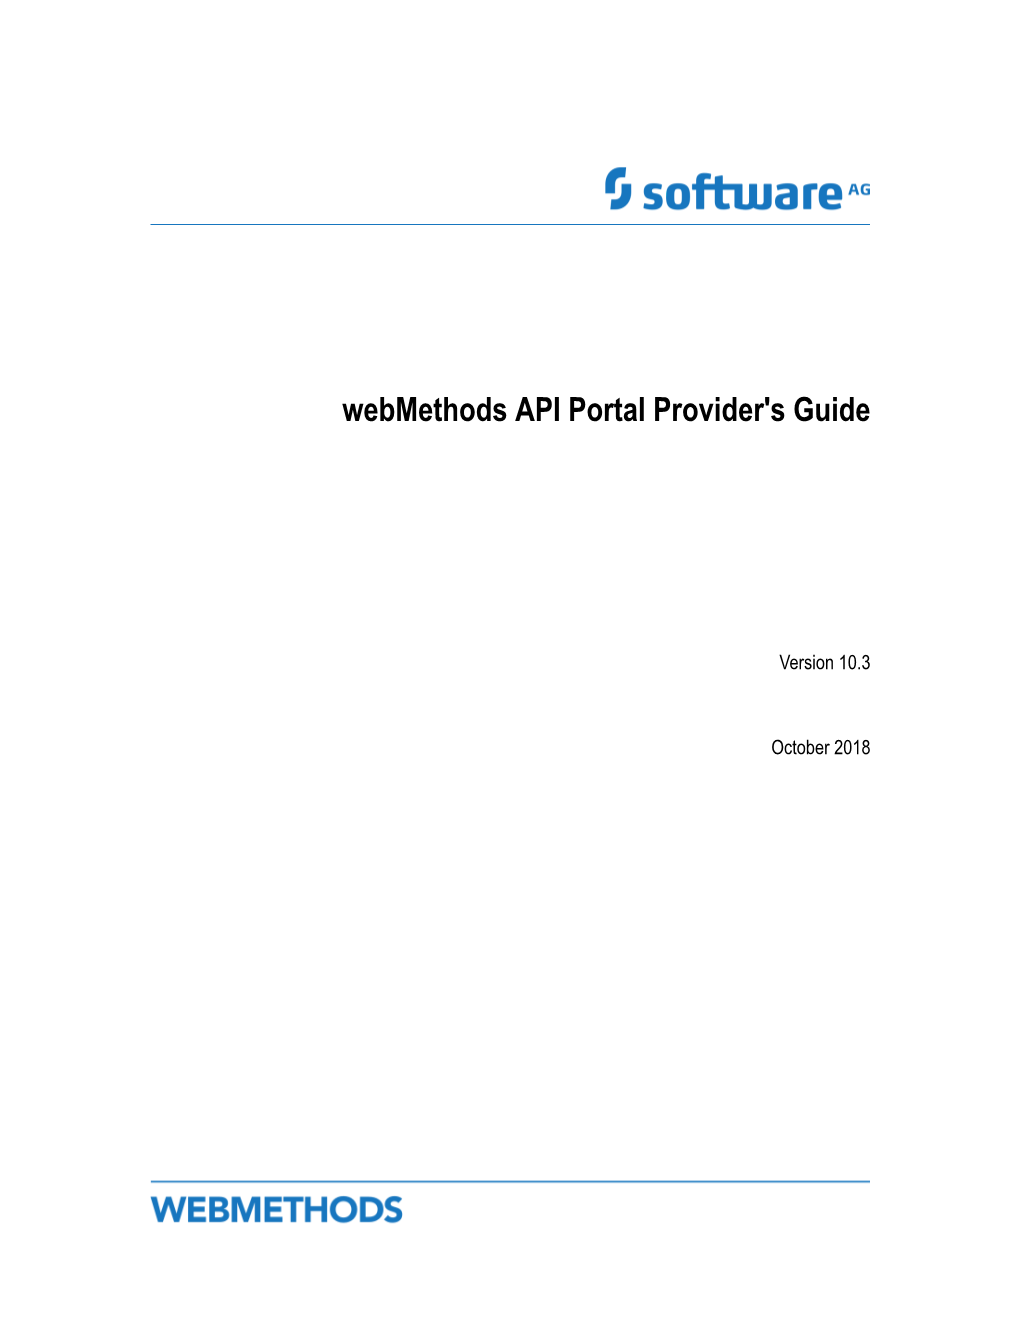 Webmethods API Portal Provider's Guide